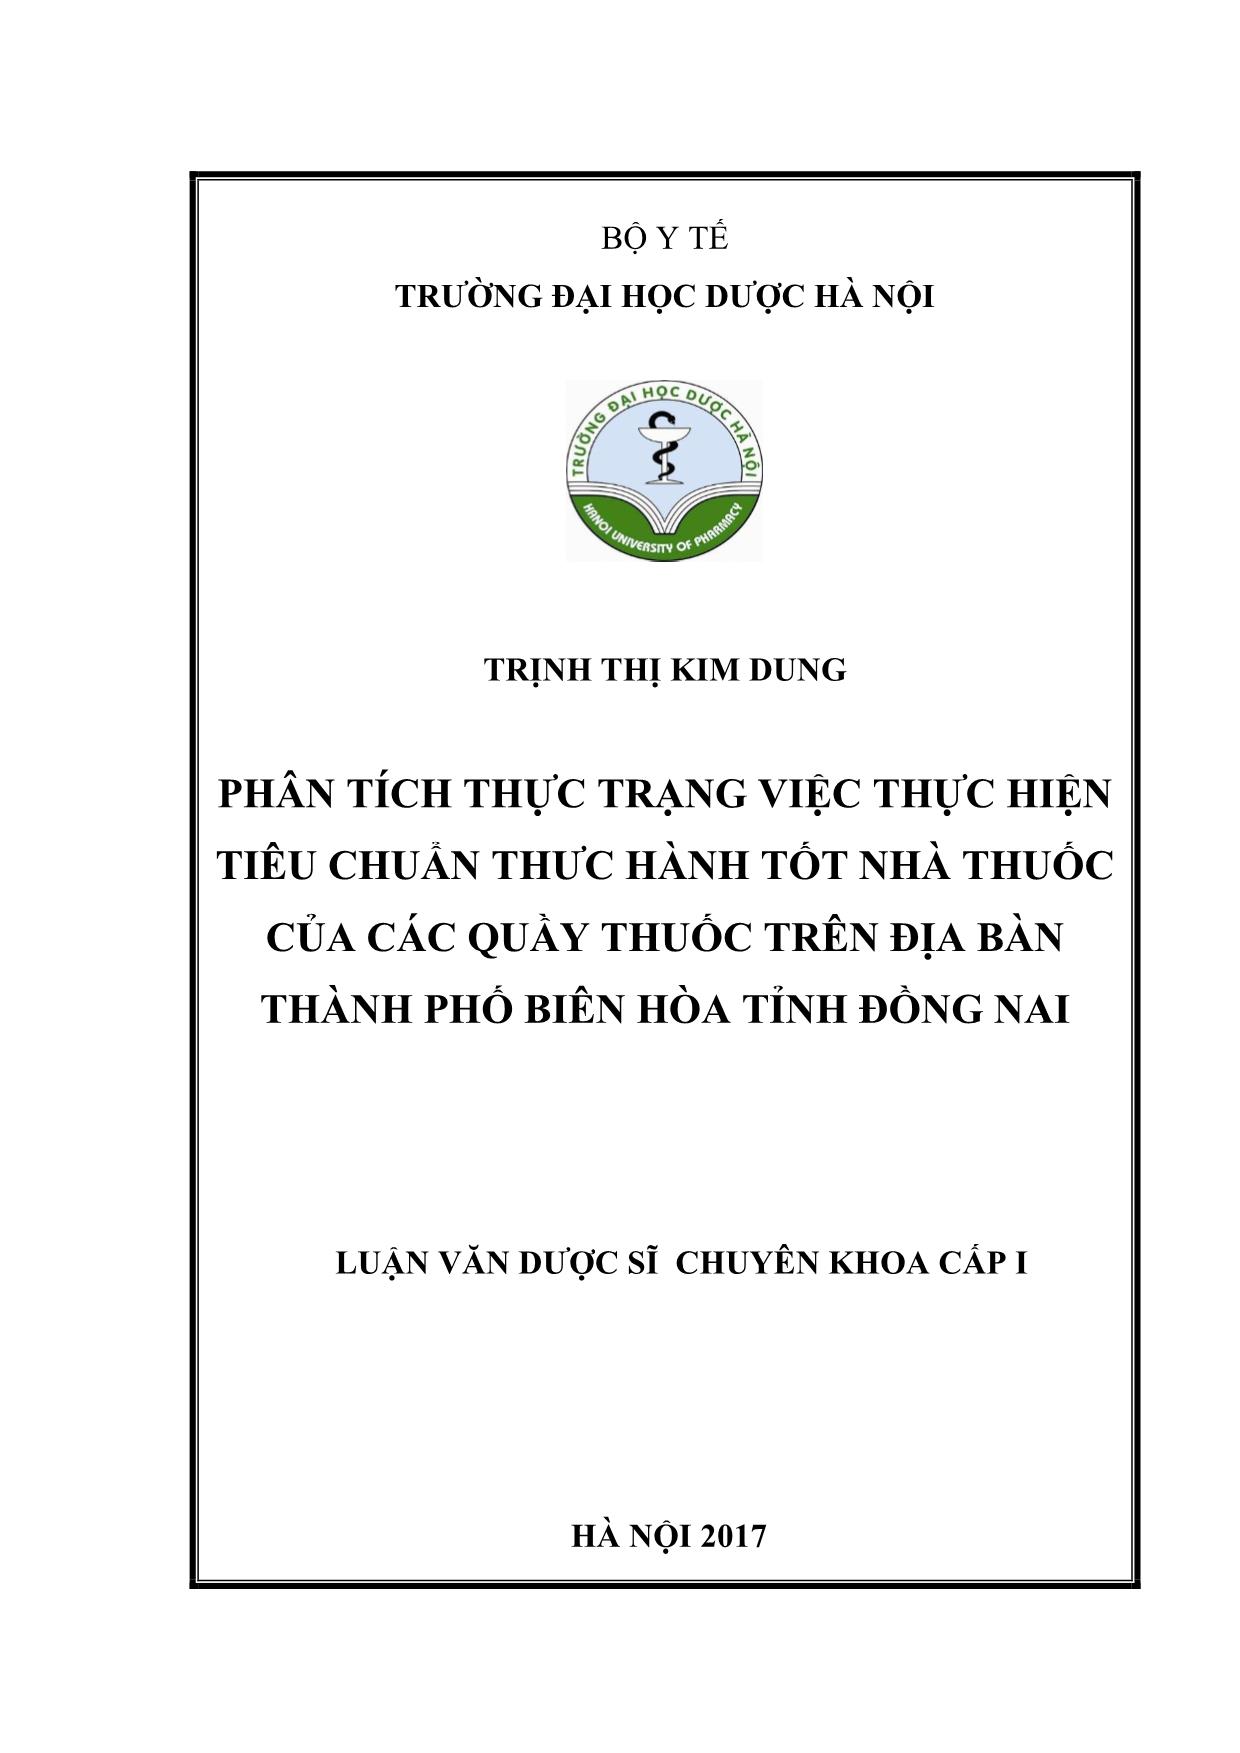 Phân tích thực trạng việc thực hiện tiêu chuẩn thực hành tốt nhà thuốc của các quầy thuốc trên địa bàn thành phố Biên hòa tỉnh Đồng Nai trang 1